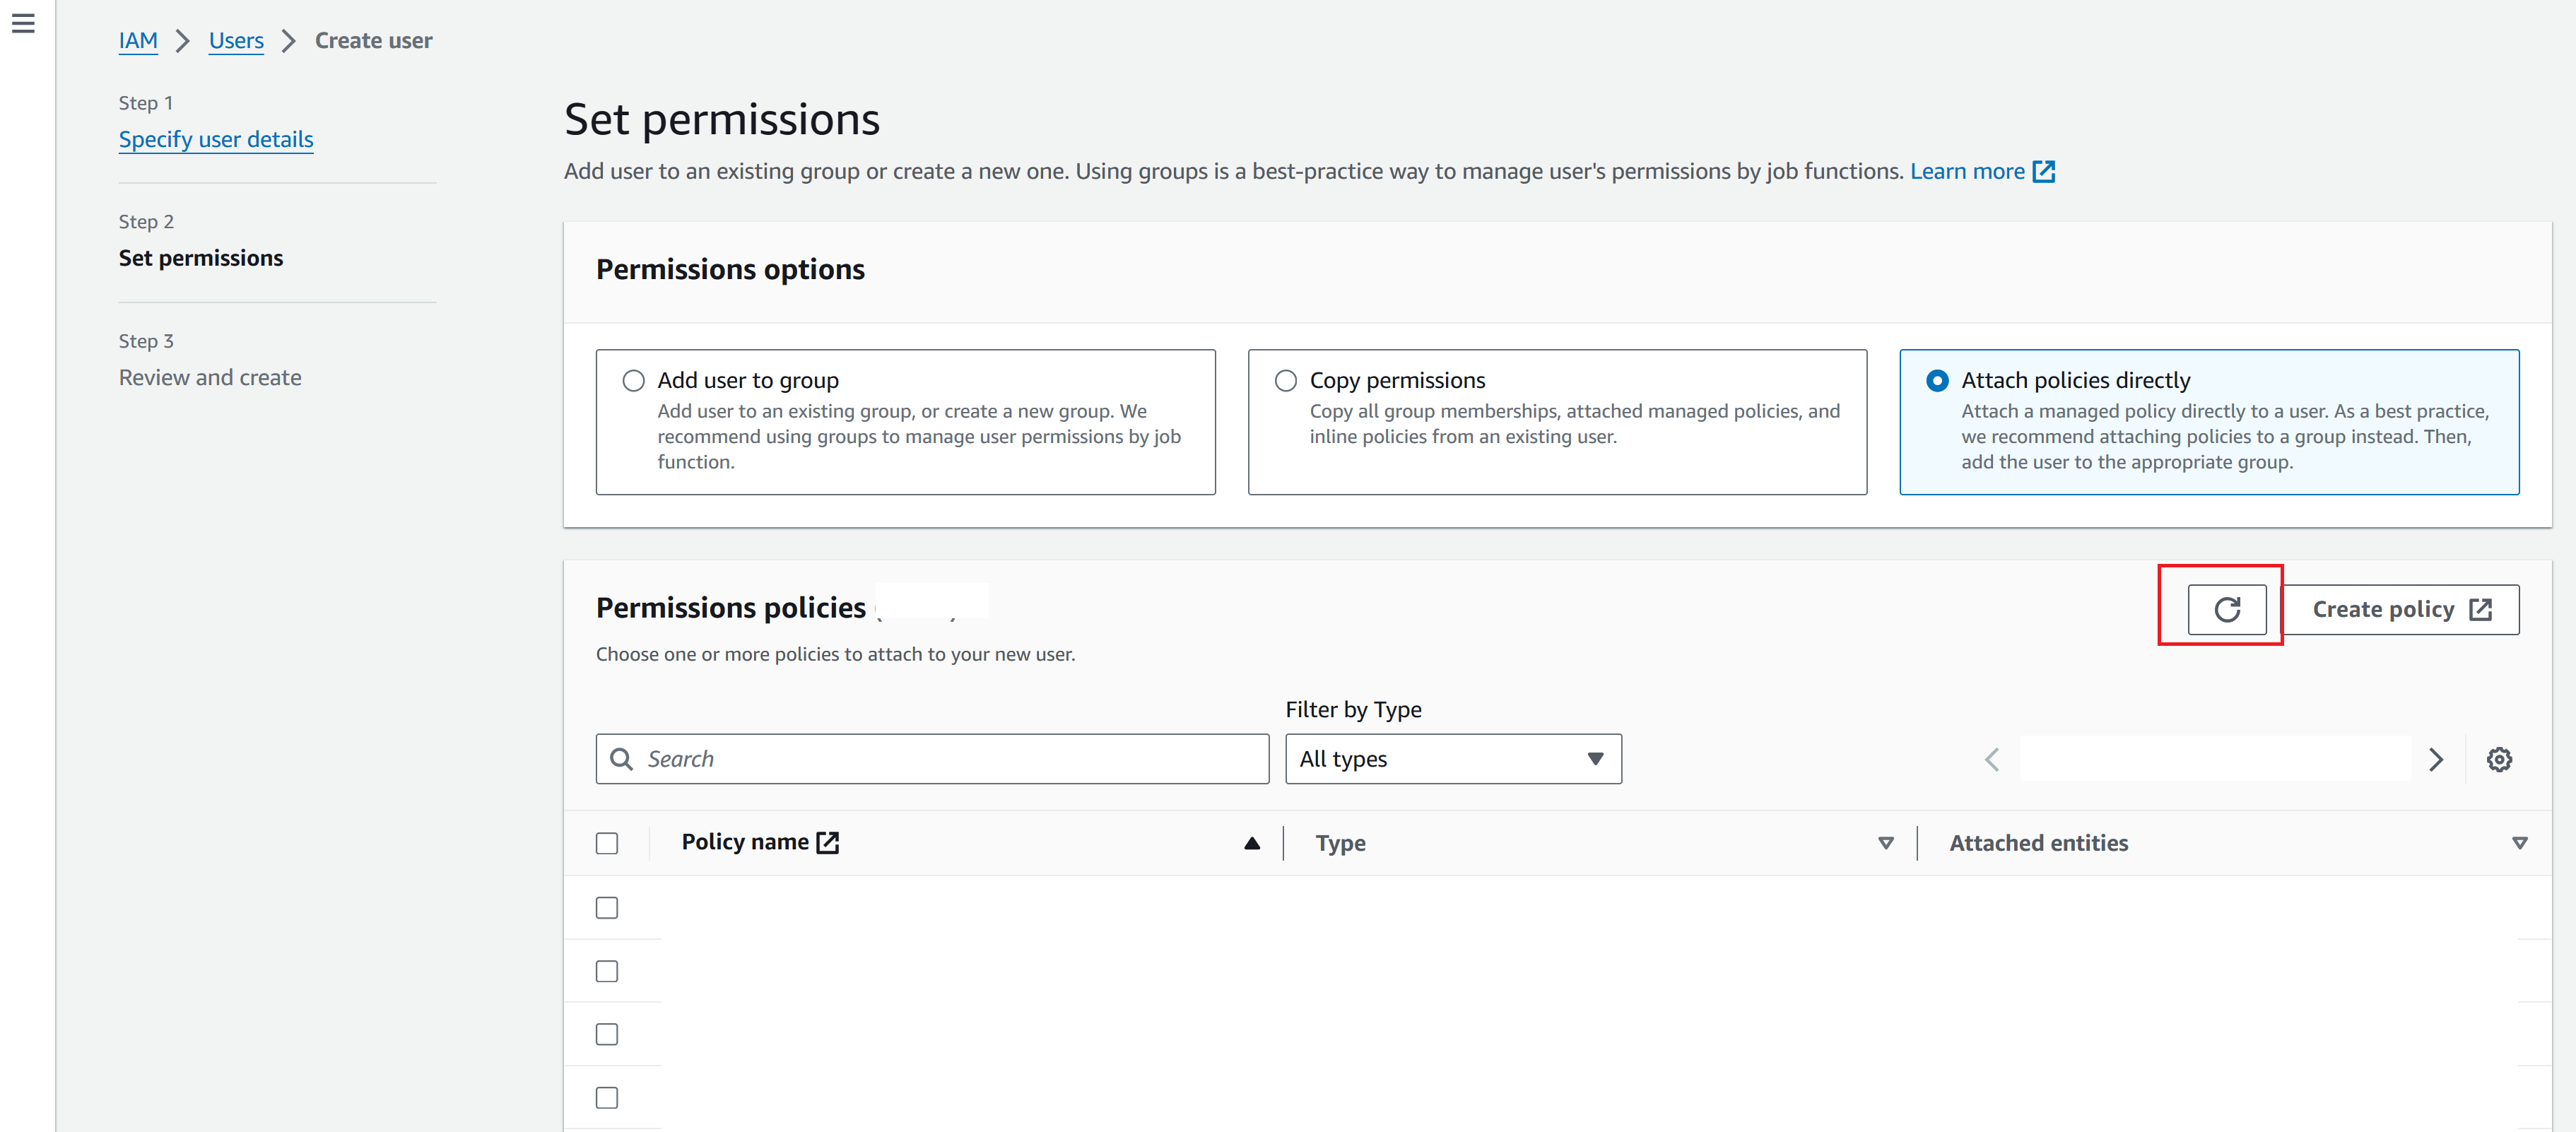 権限設定画面の Permissions policies のタブで、再読み込みボタンをクリックする